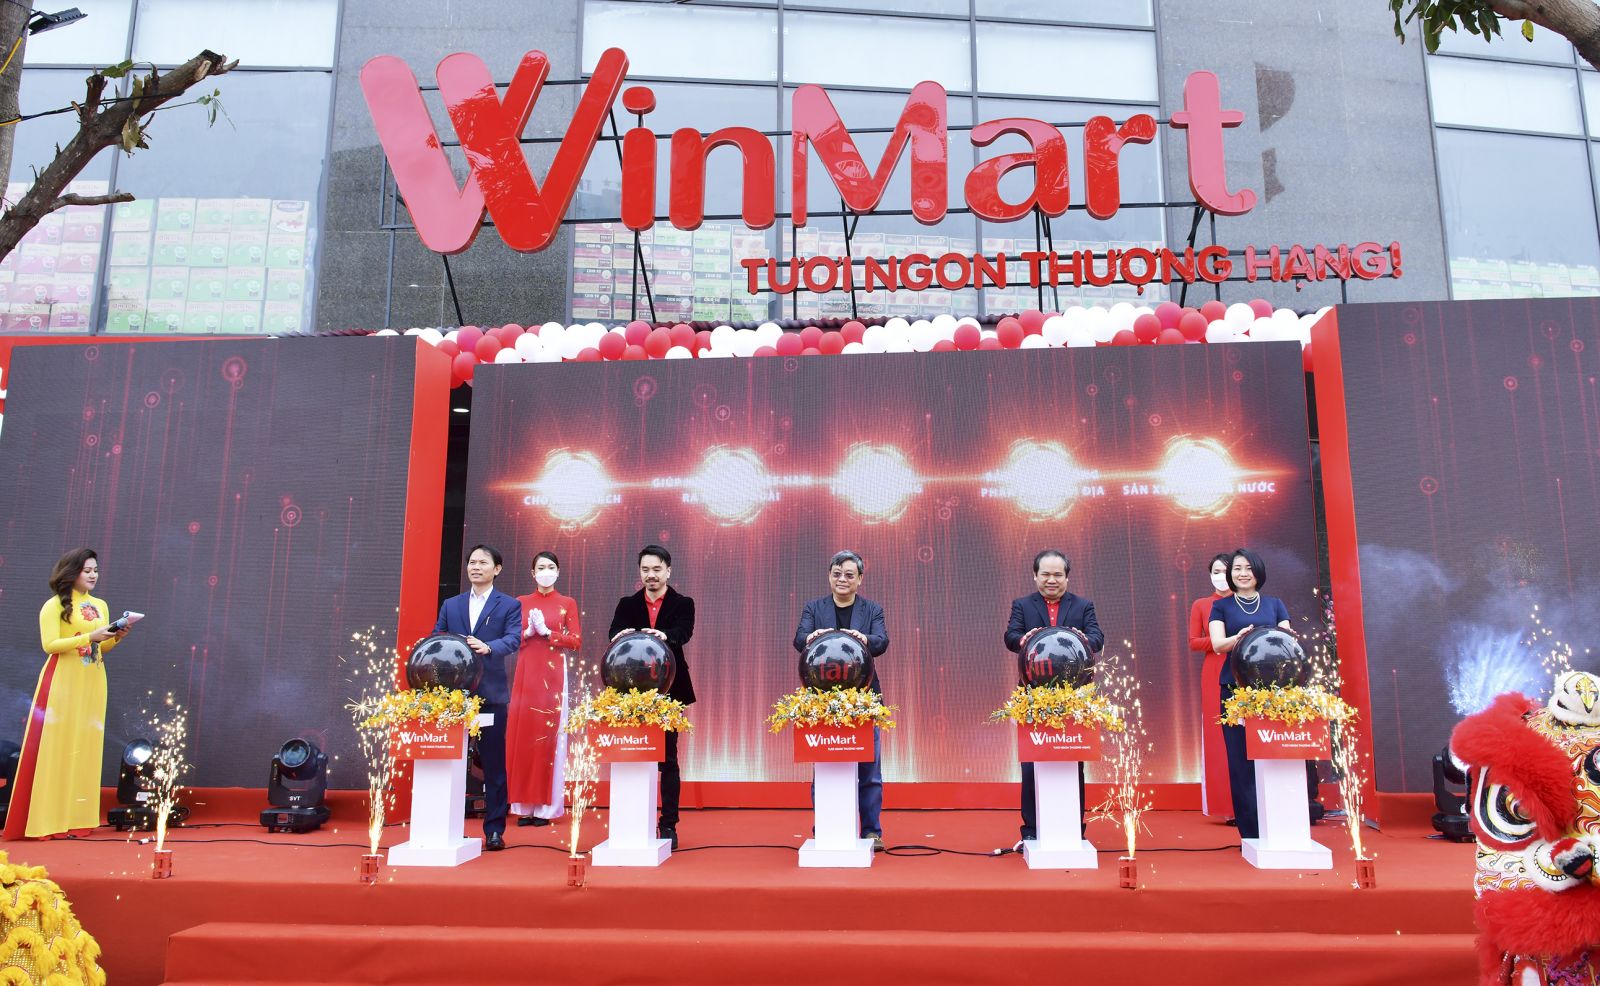 WinCommerce khai trương siêu thị đầu tiên với tên WinMart tại Tp. Vinh (Nghệ An).